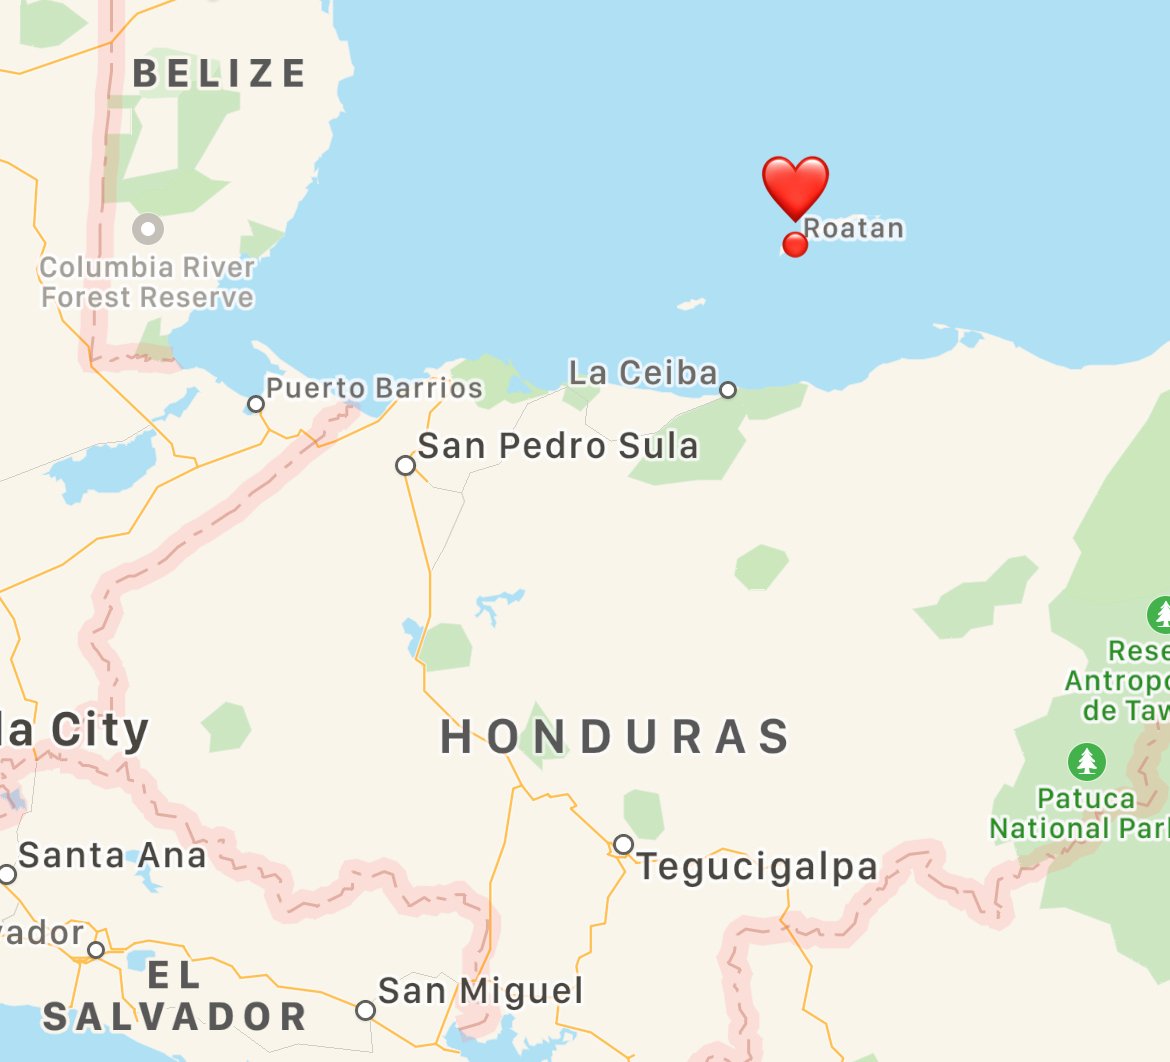 Where is Roatan, Honduras